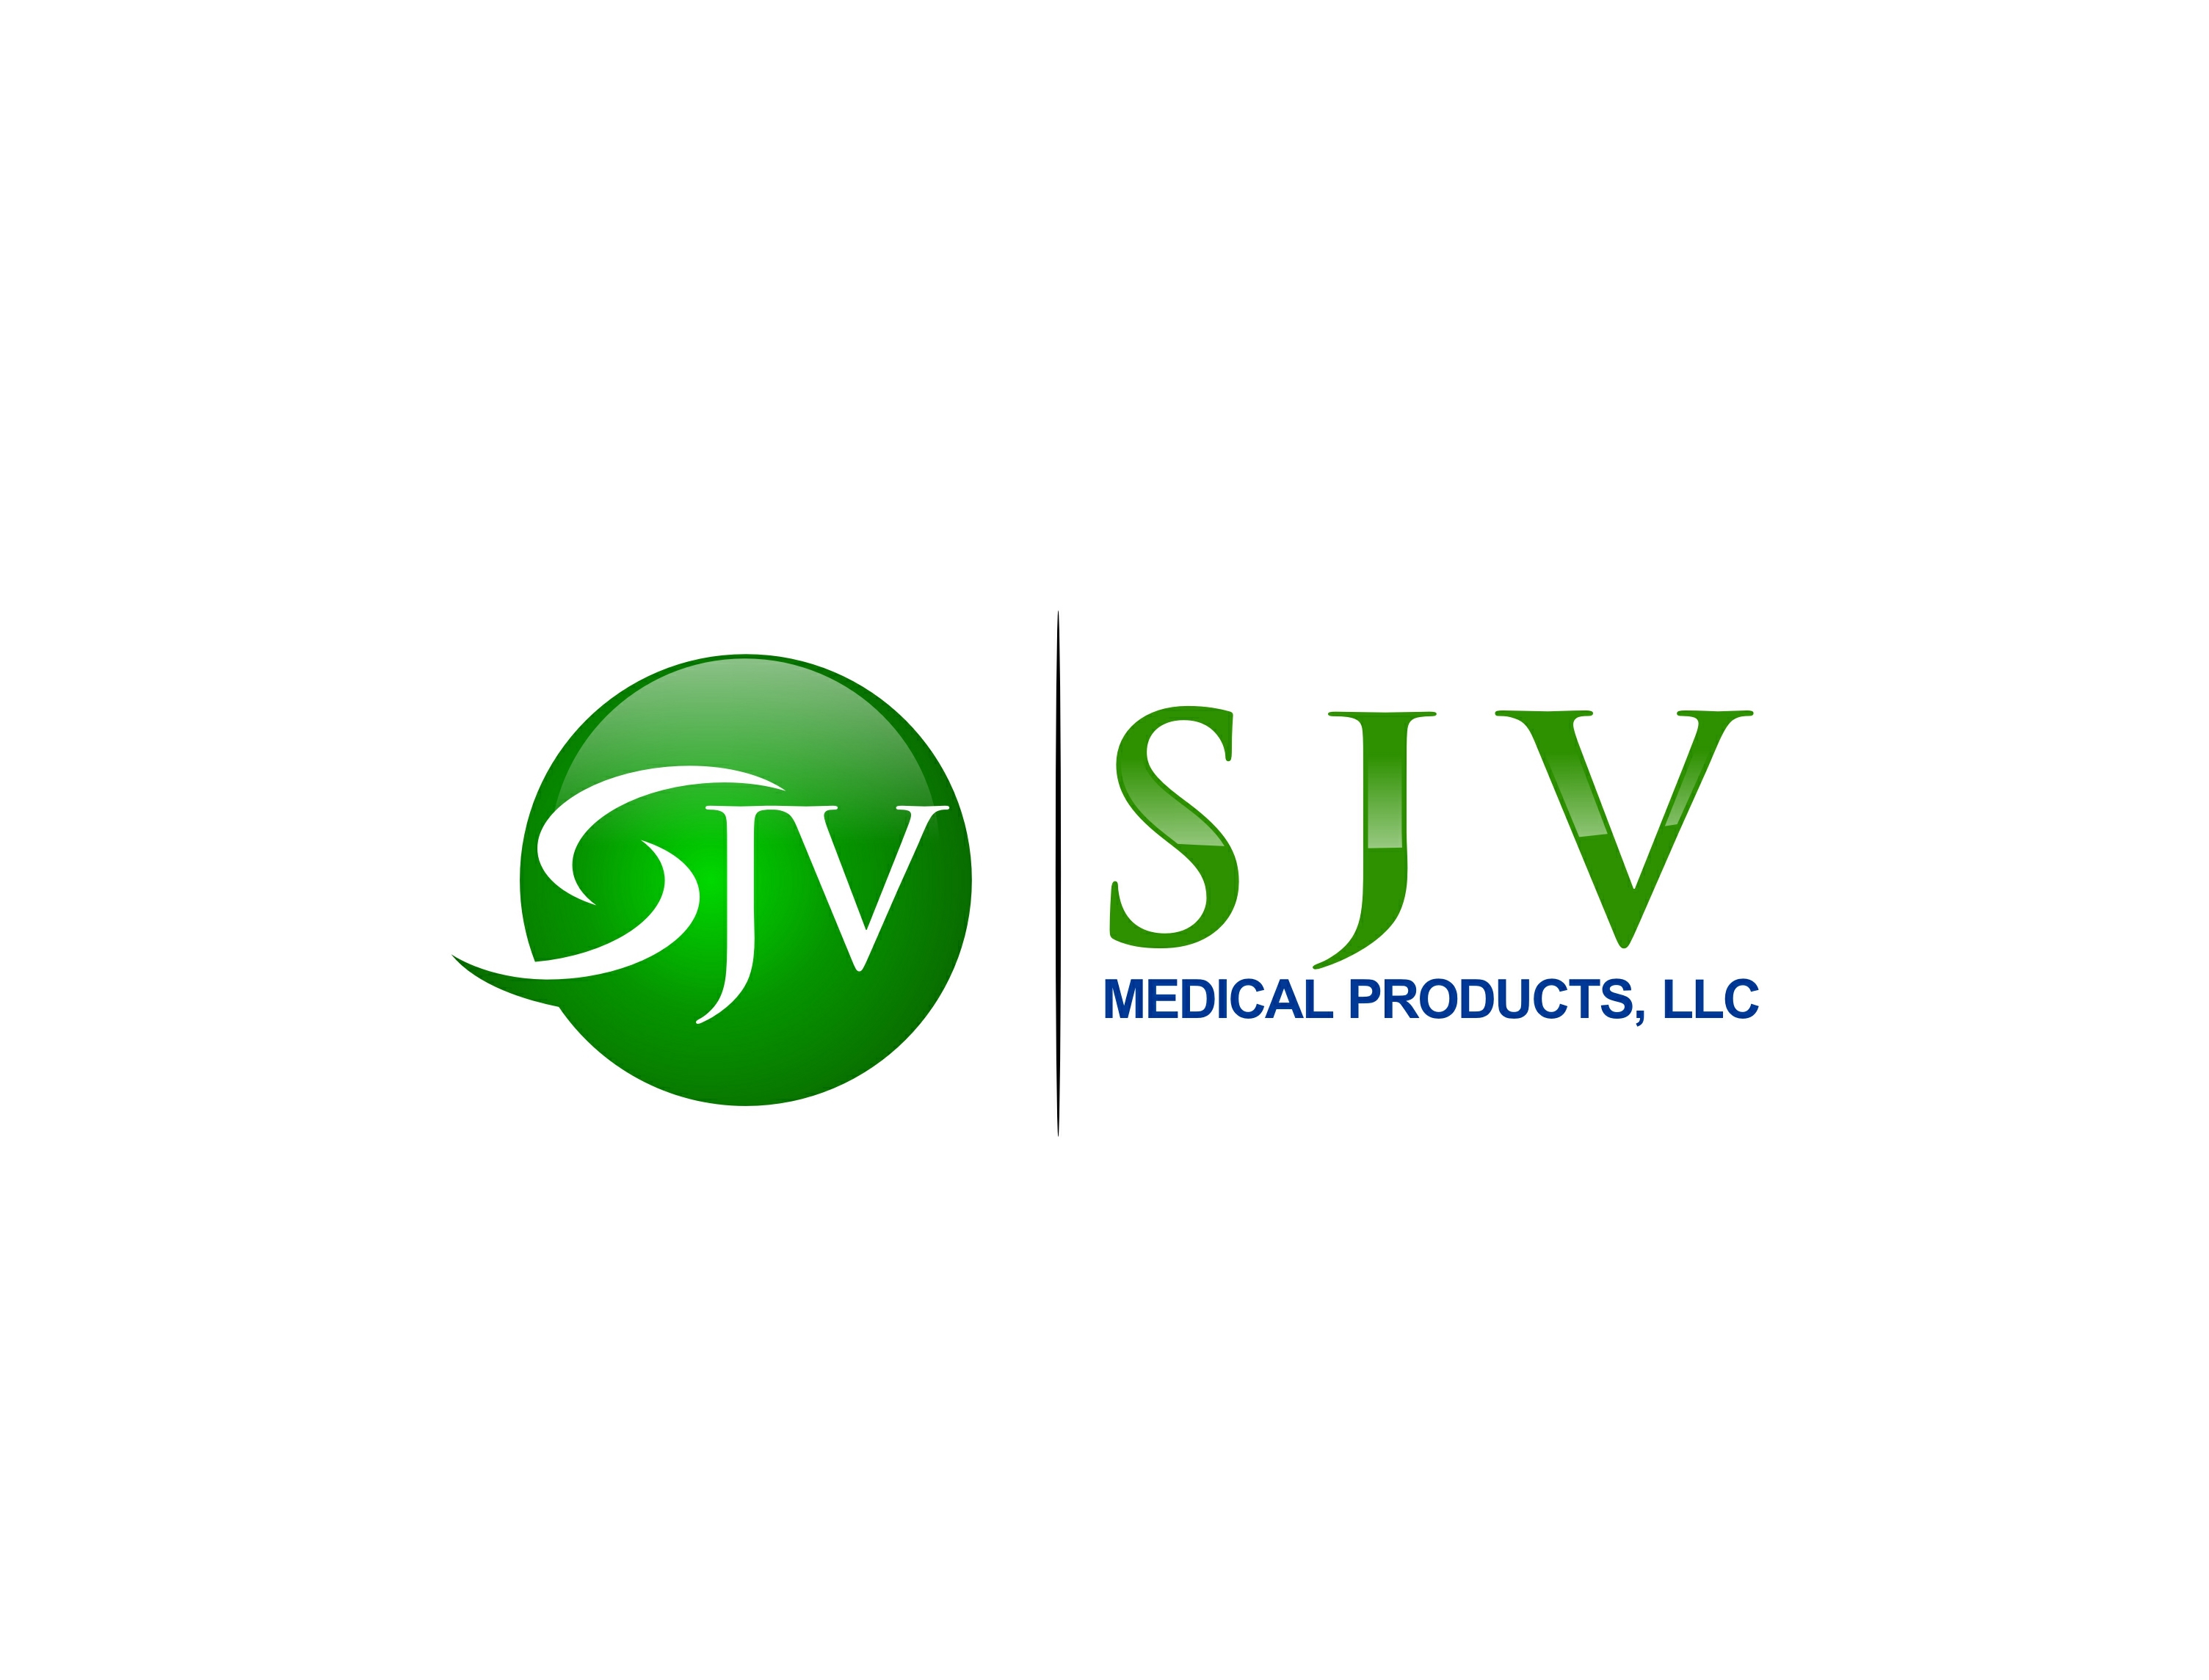 Sponsor SJV Medical Products